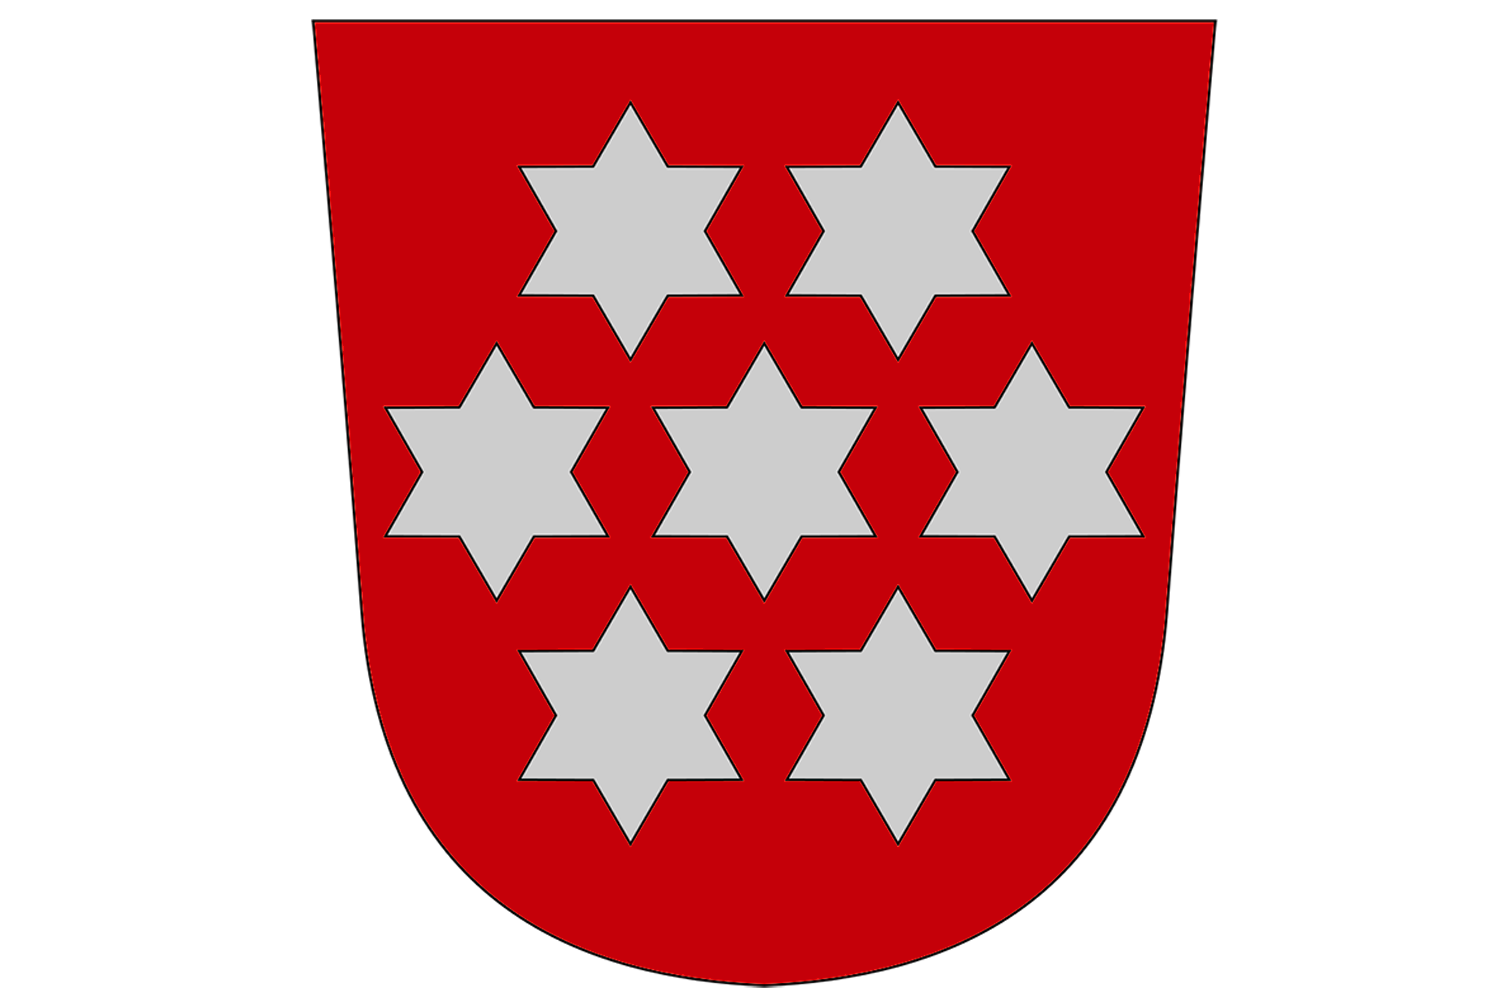 Thüringer Wappen von 1921-1933